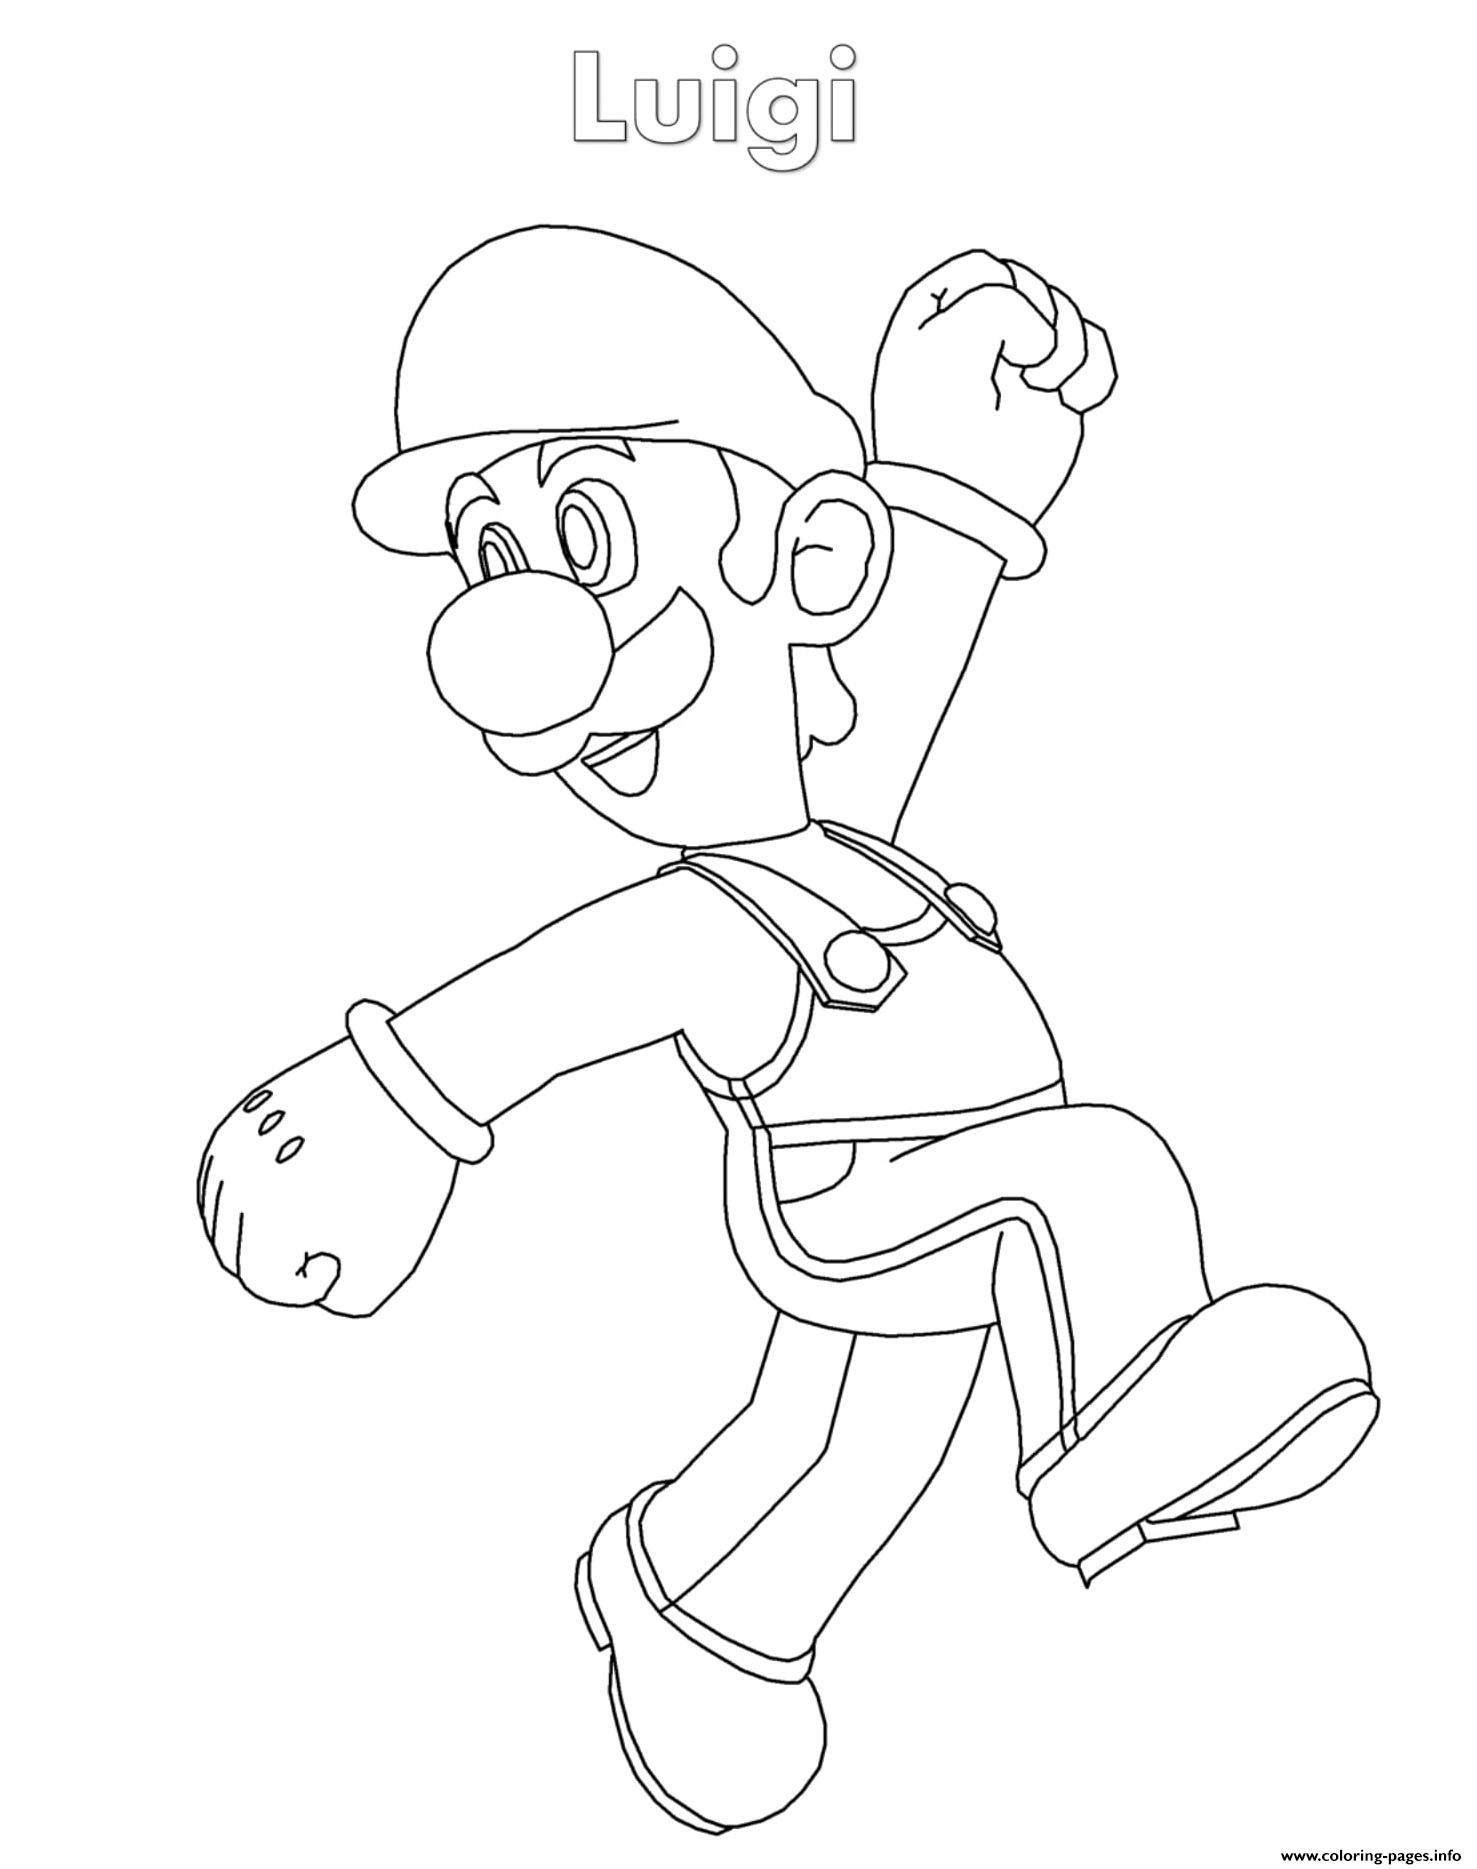 Luigi Super Mario Nintendo Coloring Pages Printable